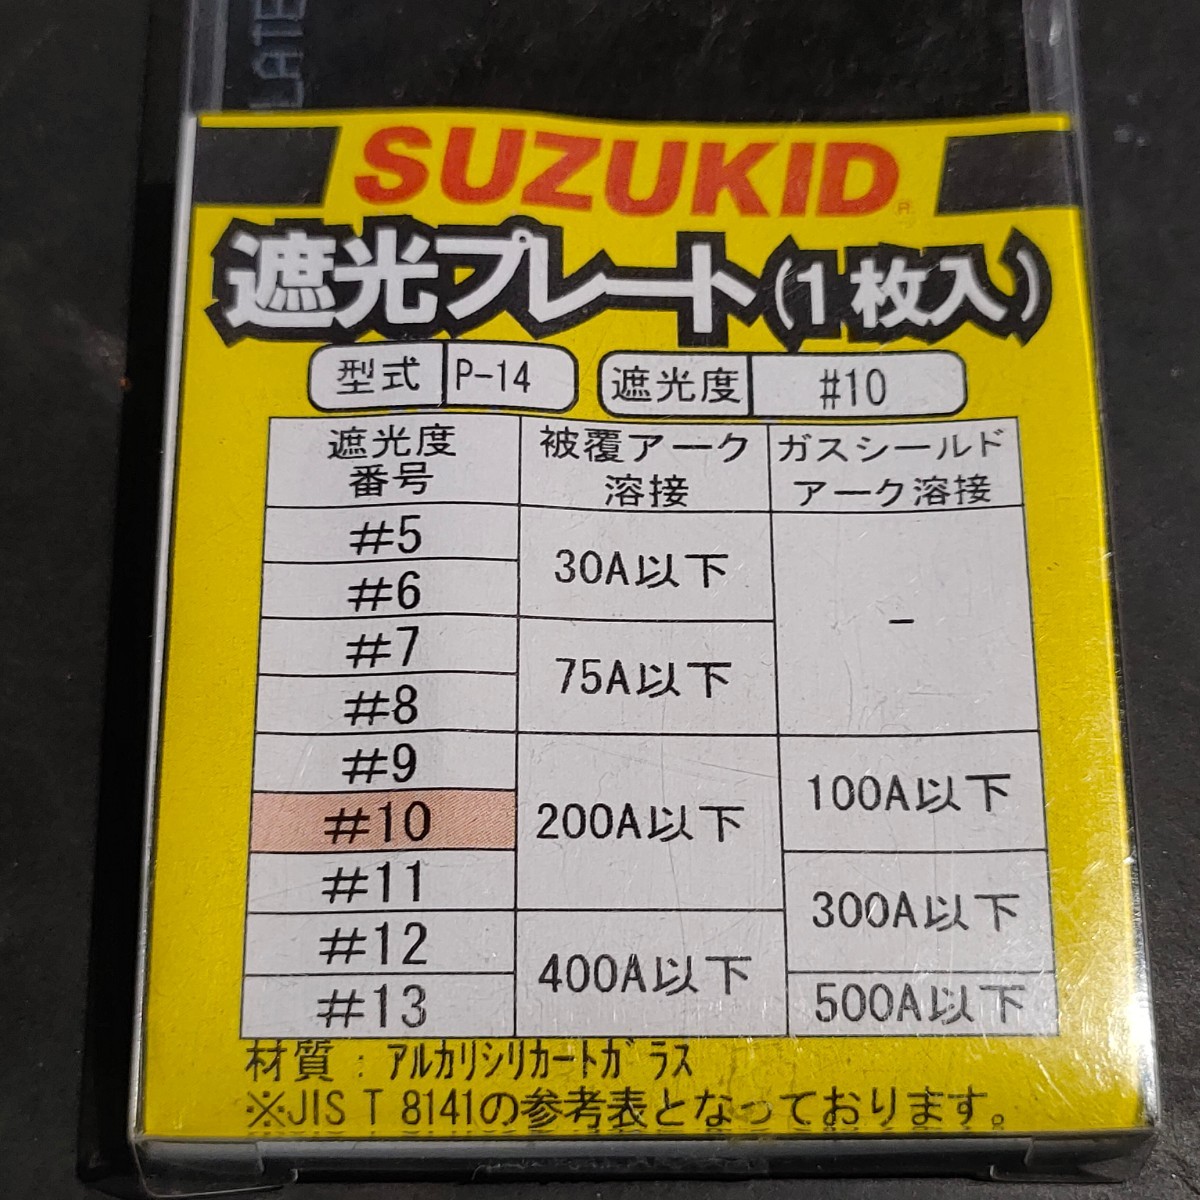 未使用品 スター電器製造 SUZUKID スズキッド 遮光プレート 遮光度 #10 1枚入 P-14_画像2